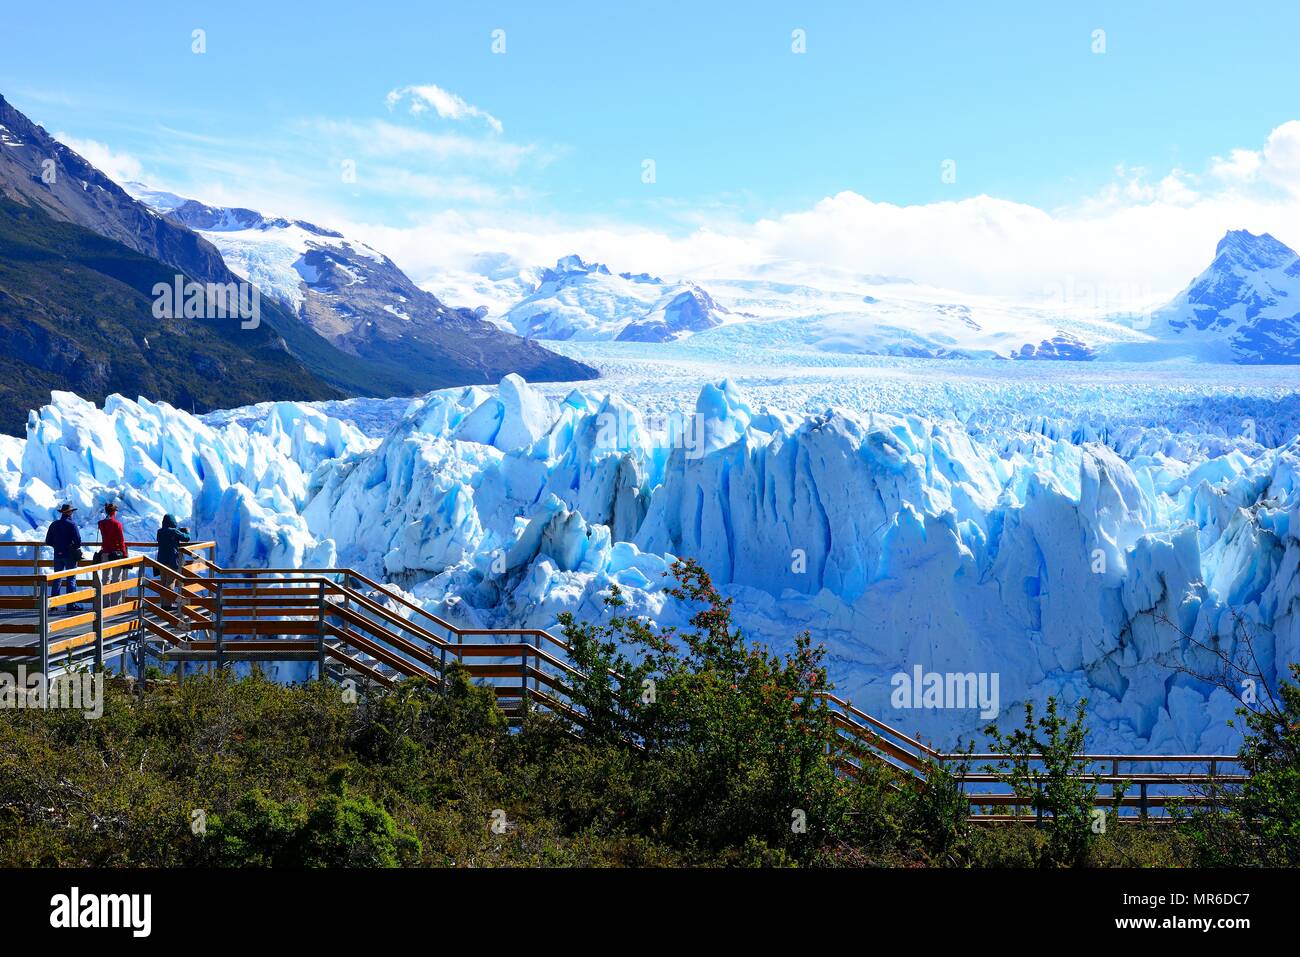 Perito Moreno Glacier Viewing Platform, Parque Nacional Los Glaciares, El Calafate, Santa Cruz Province, Argentina Stock Photo